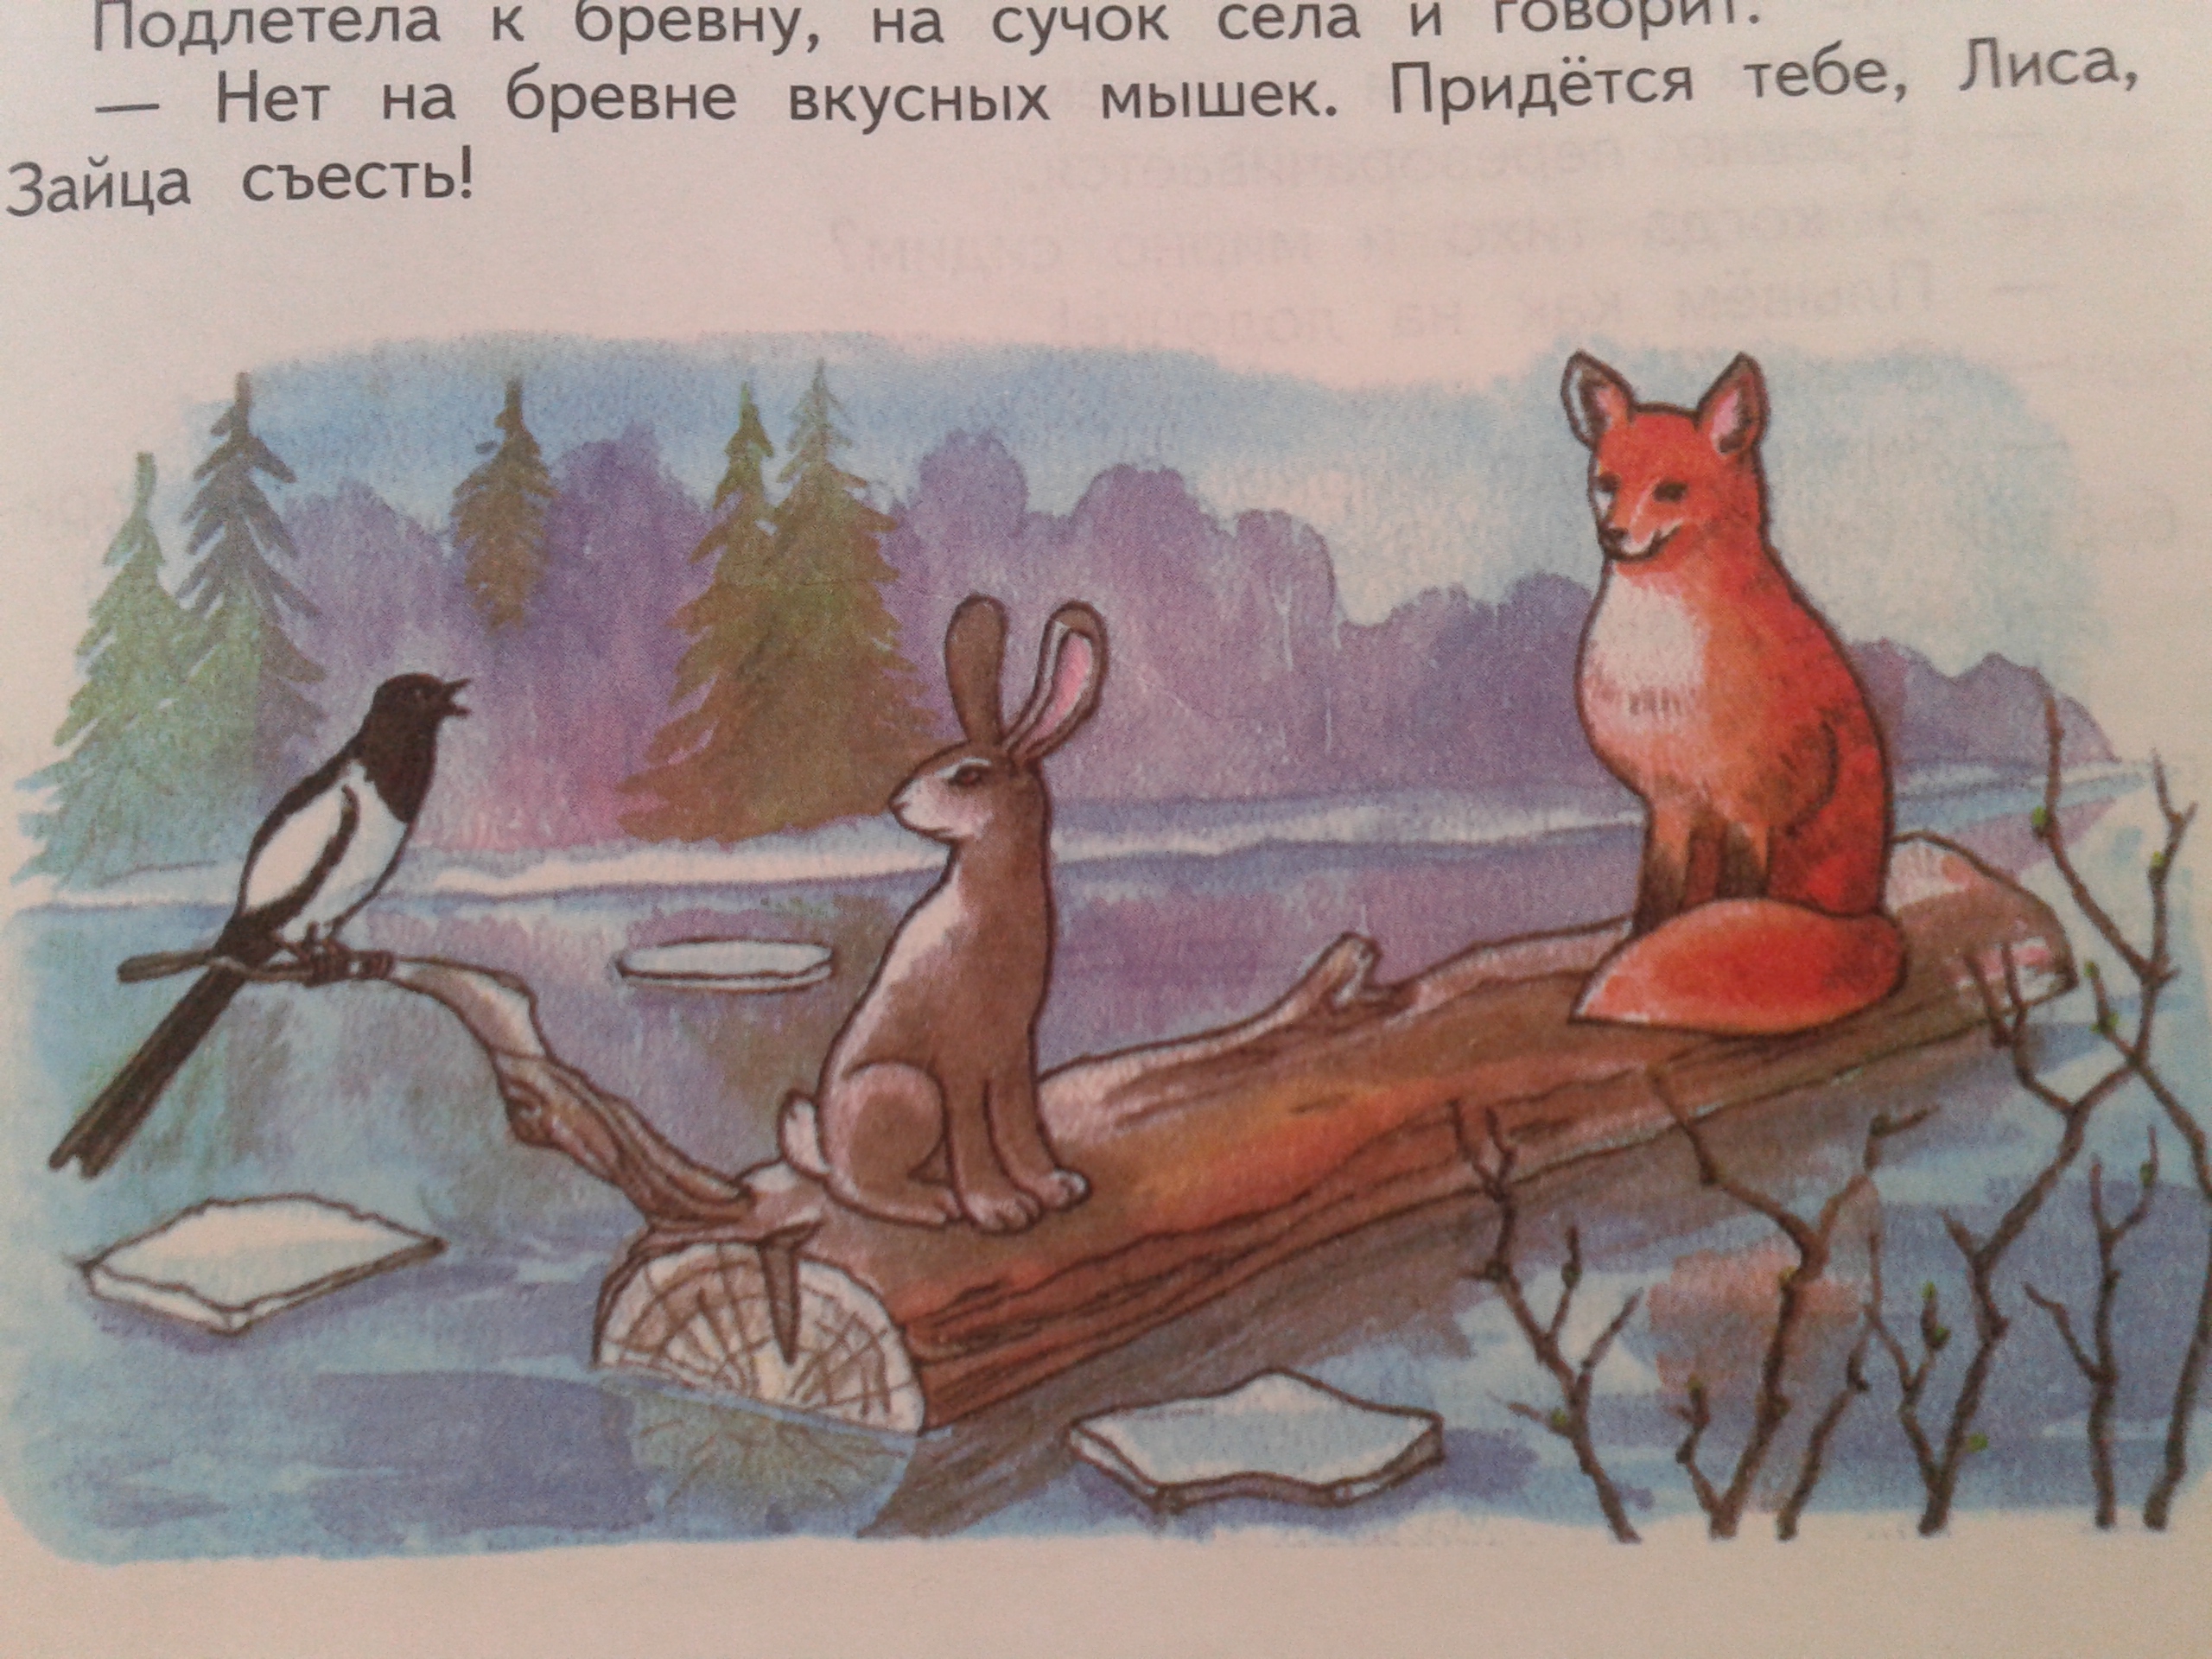 Иллюстрации к произведениям Сладкова